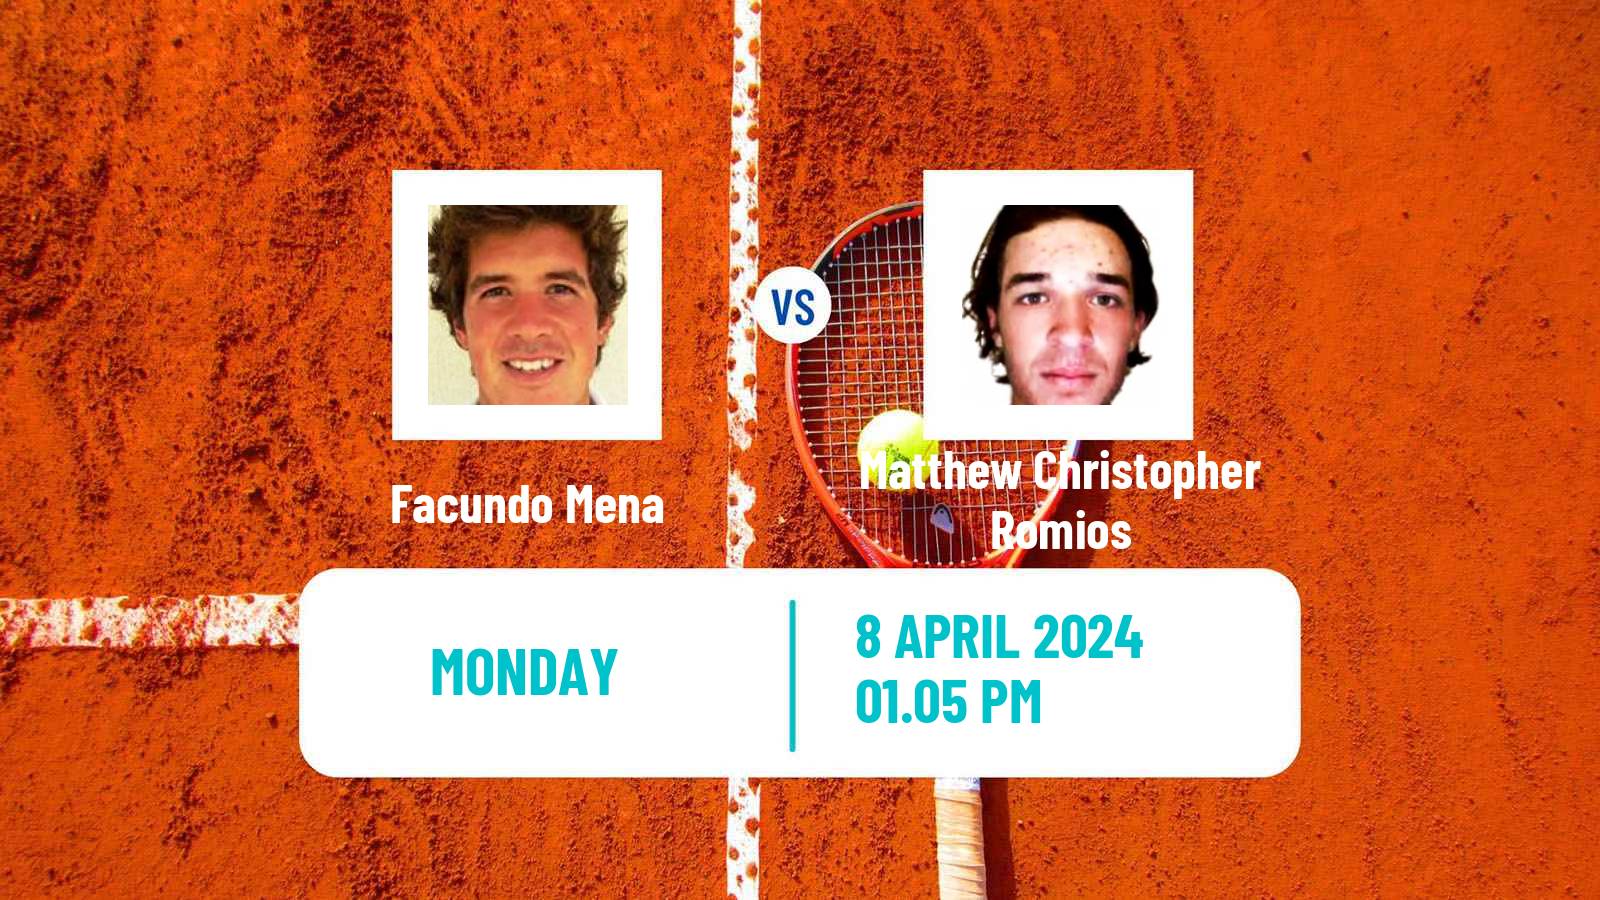 Tennis Morelos Challenger Men Facundo Mena - Matthew Christopher Romios